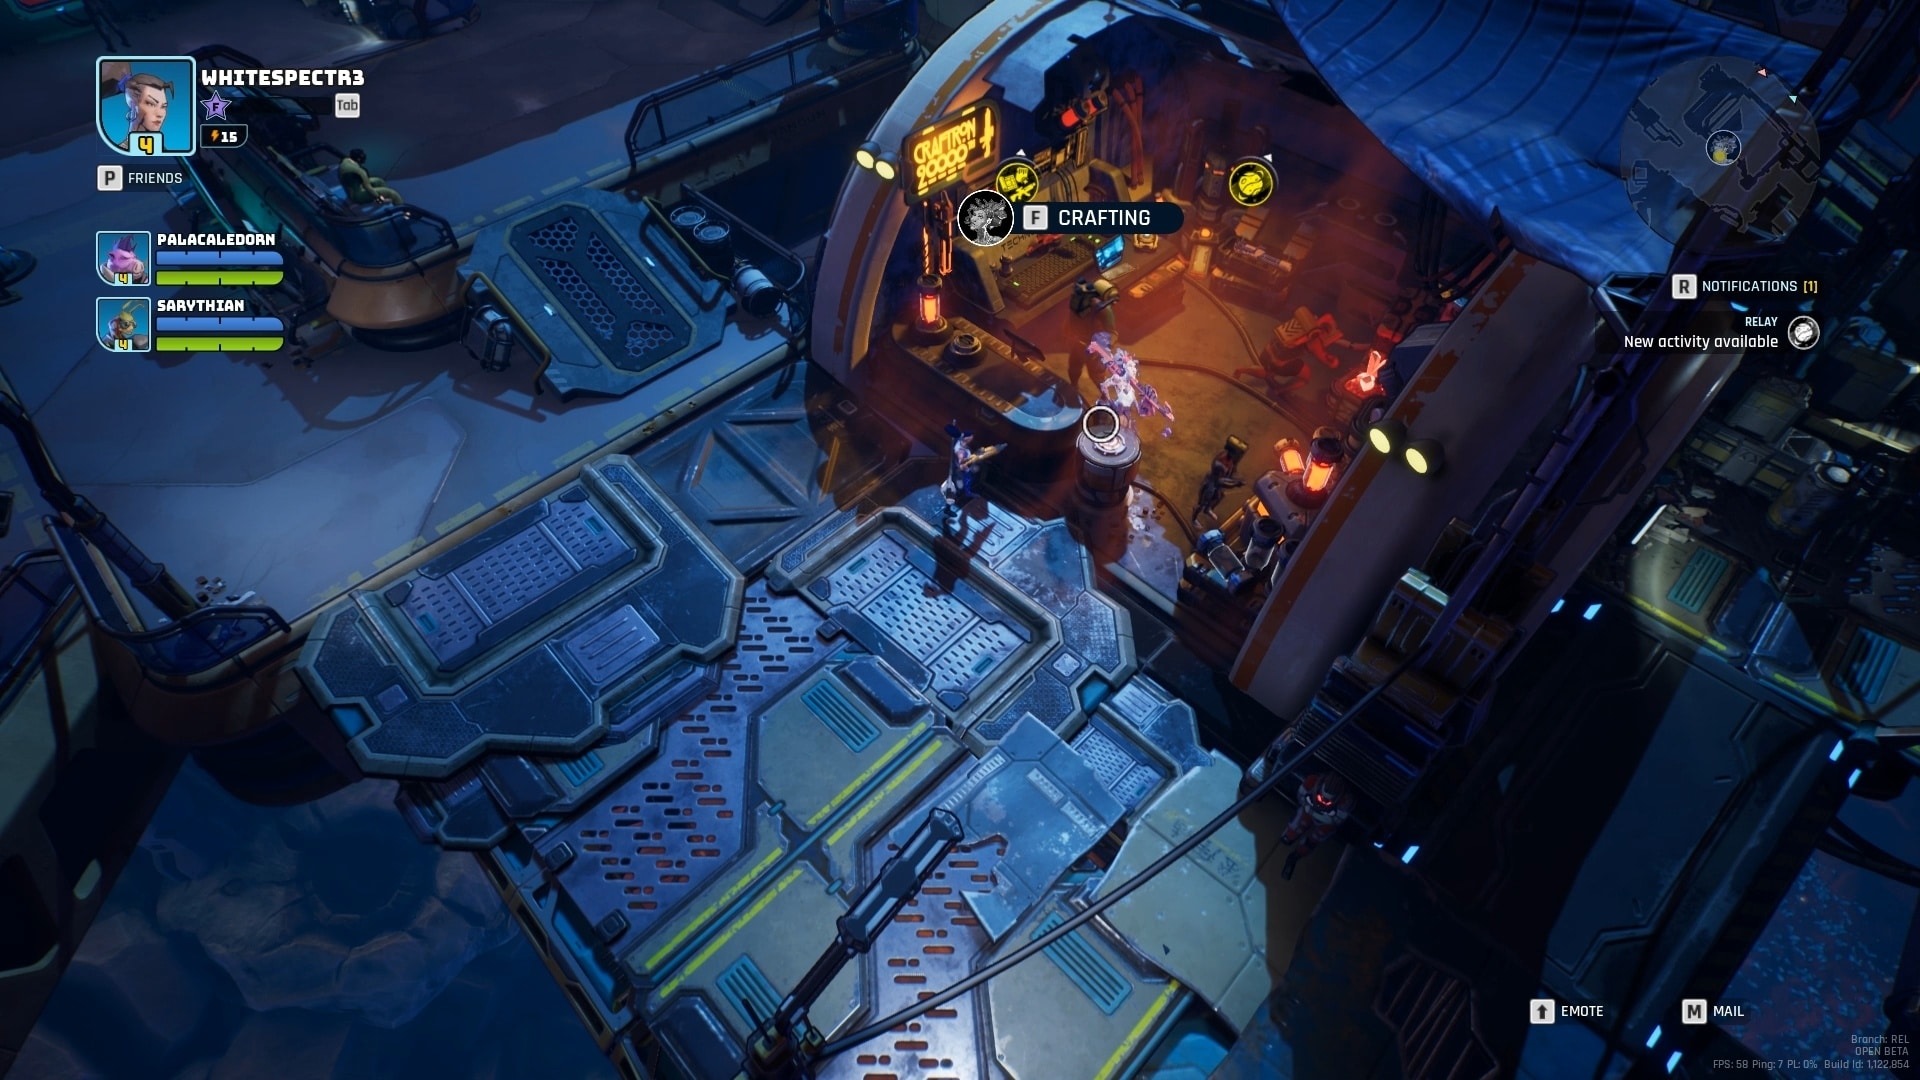 Stacja kosmiczna Devil's Gambit zapewnia możliwość tworzenia nowego sprzętu pomiędzy misjami.